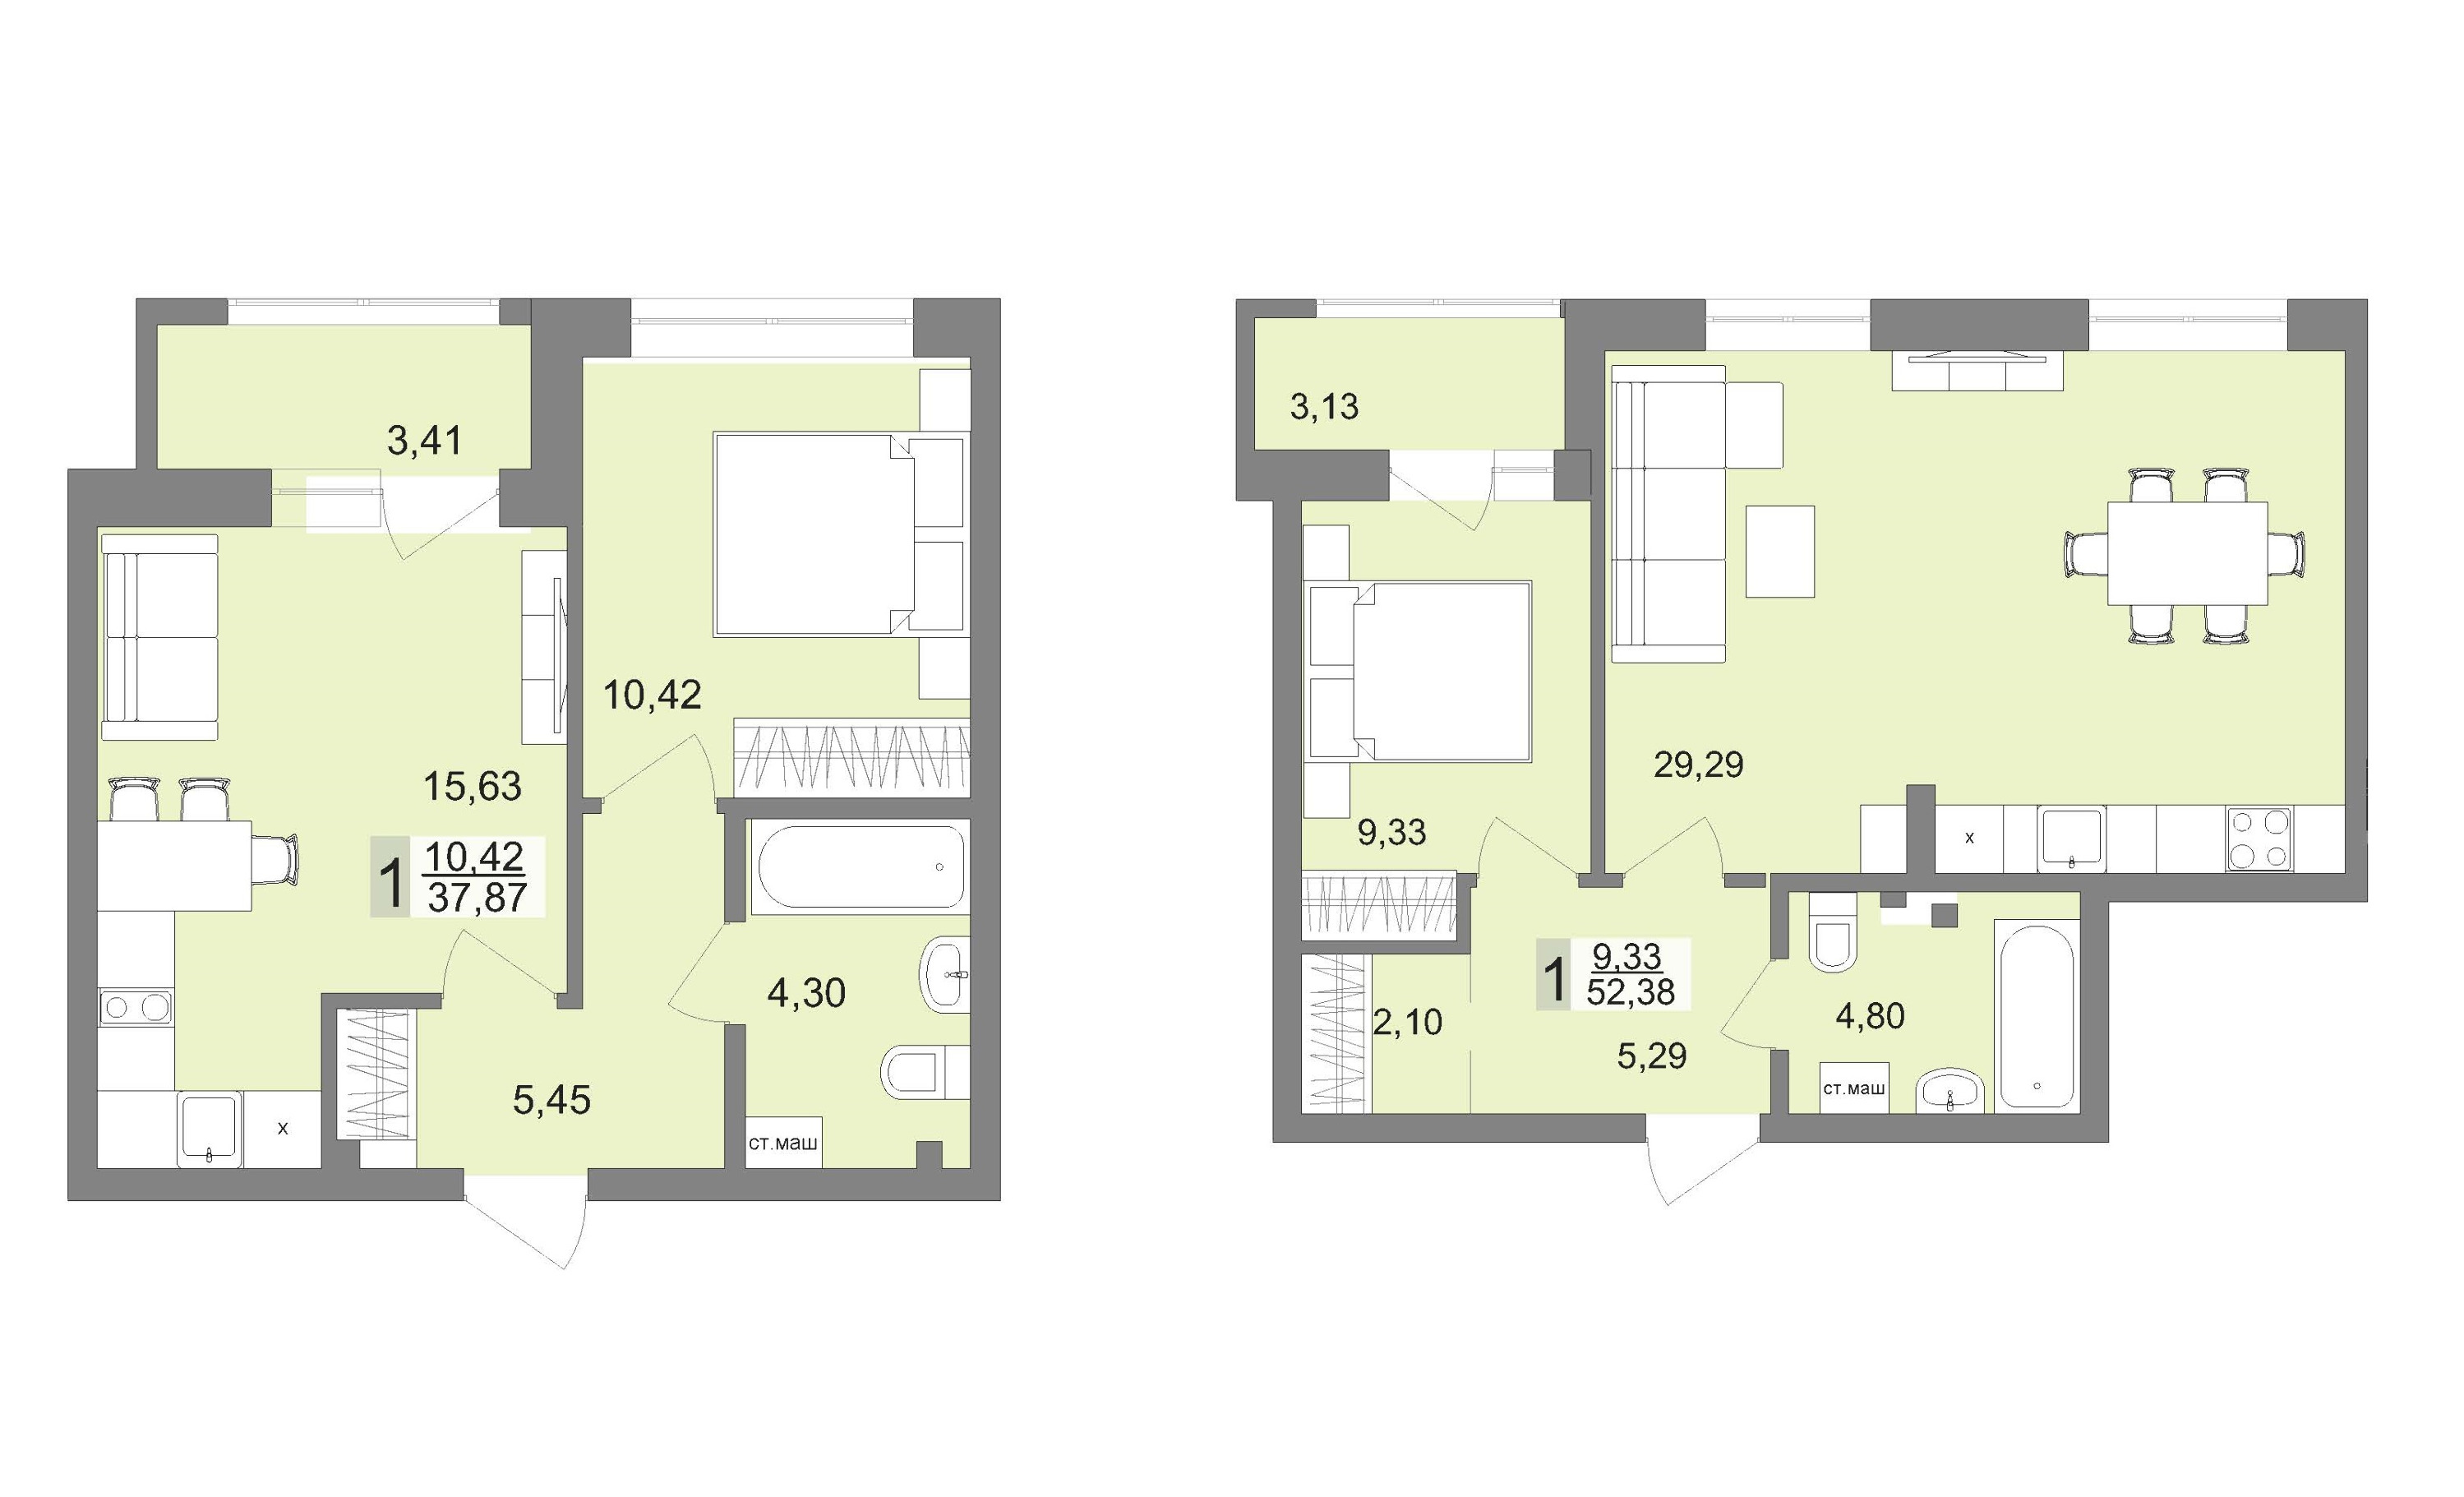 Квартиры с одинаковым количеством комнат могут быть разными по площади, такой европейский подход к формированию планировок давно пришелся по вкусу горожанам